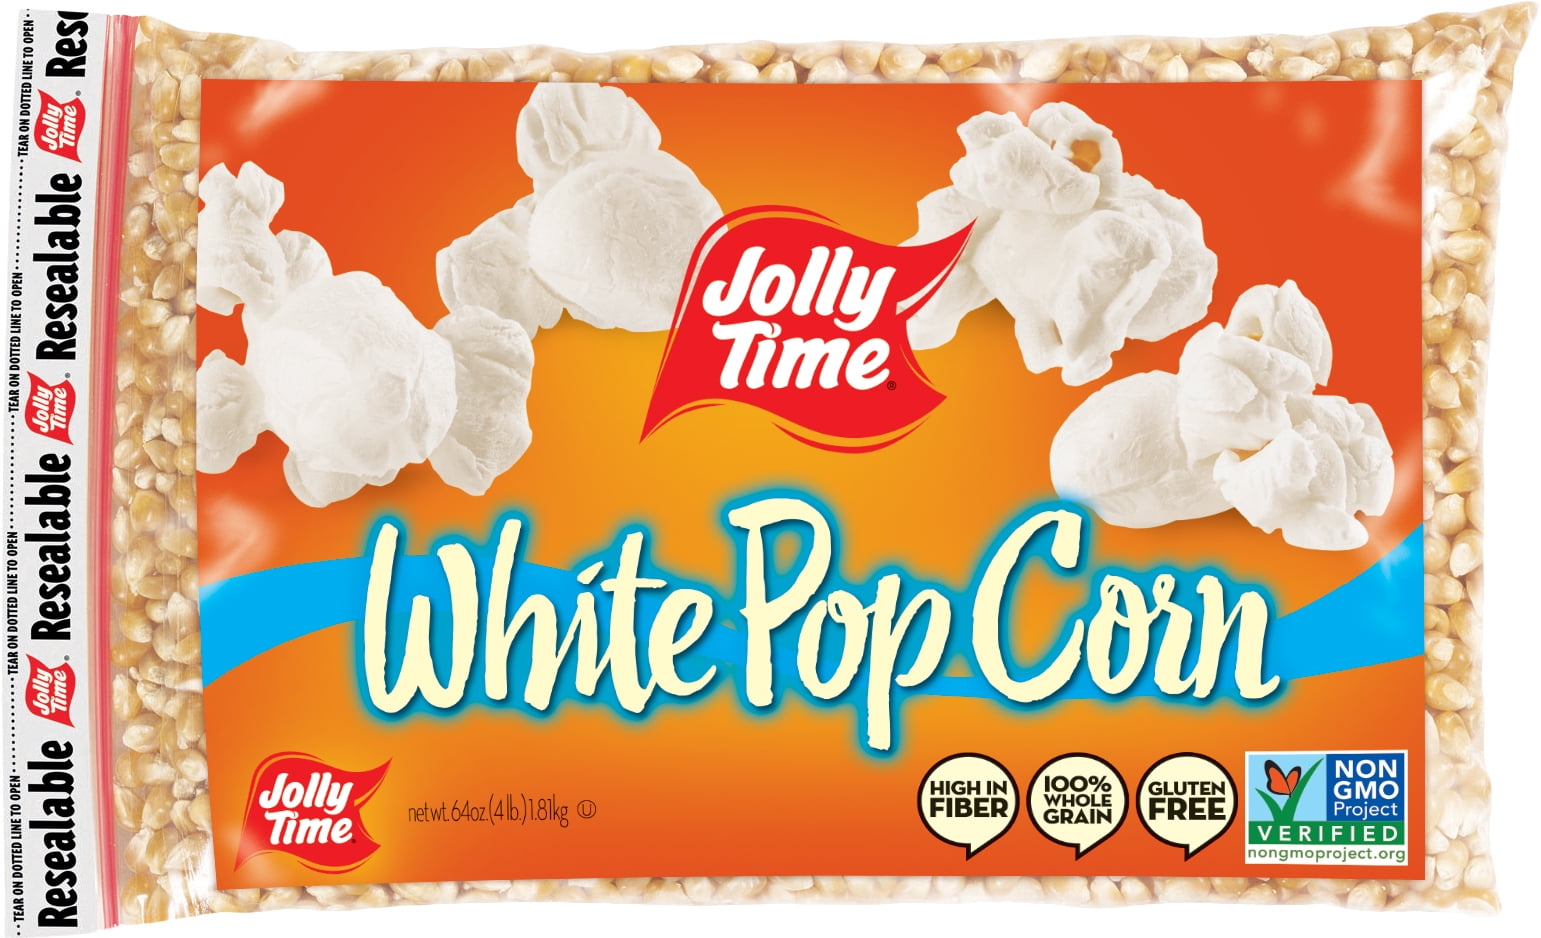 jolly time white popcorn kernels 64 bag